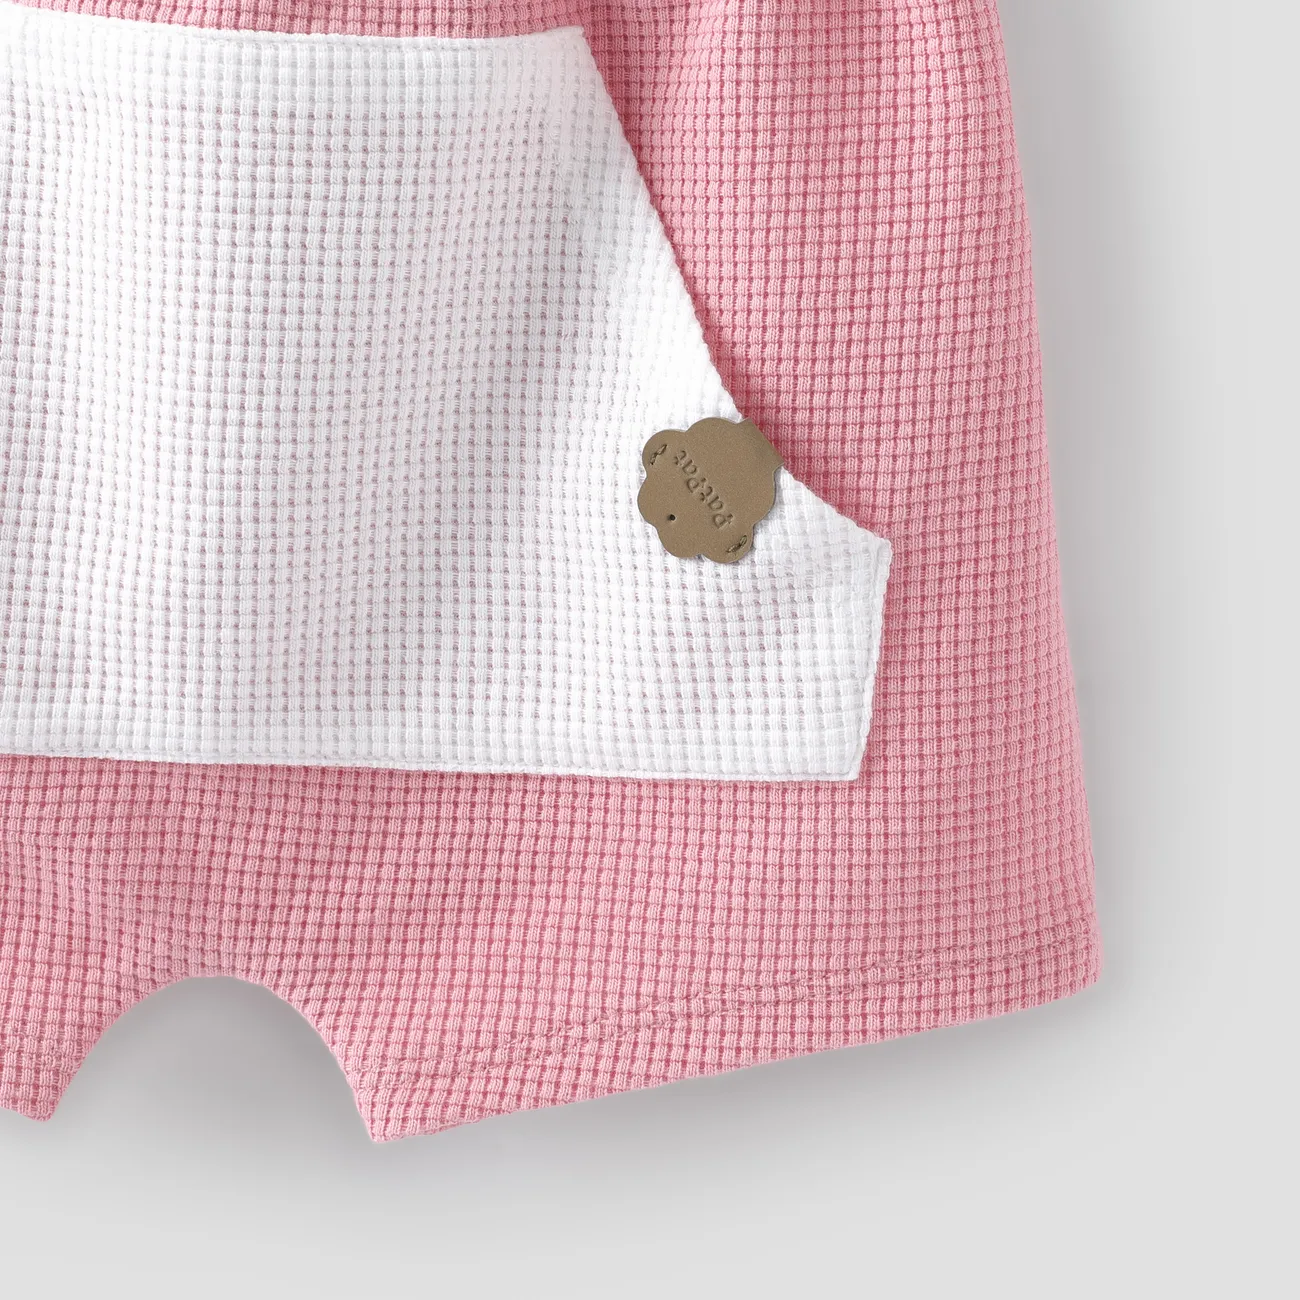 Bebê menino / menina 2pcs camiseta de cor sólida e conjunto de shorts  Rosa big image 1